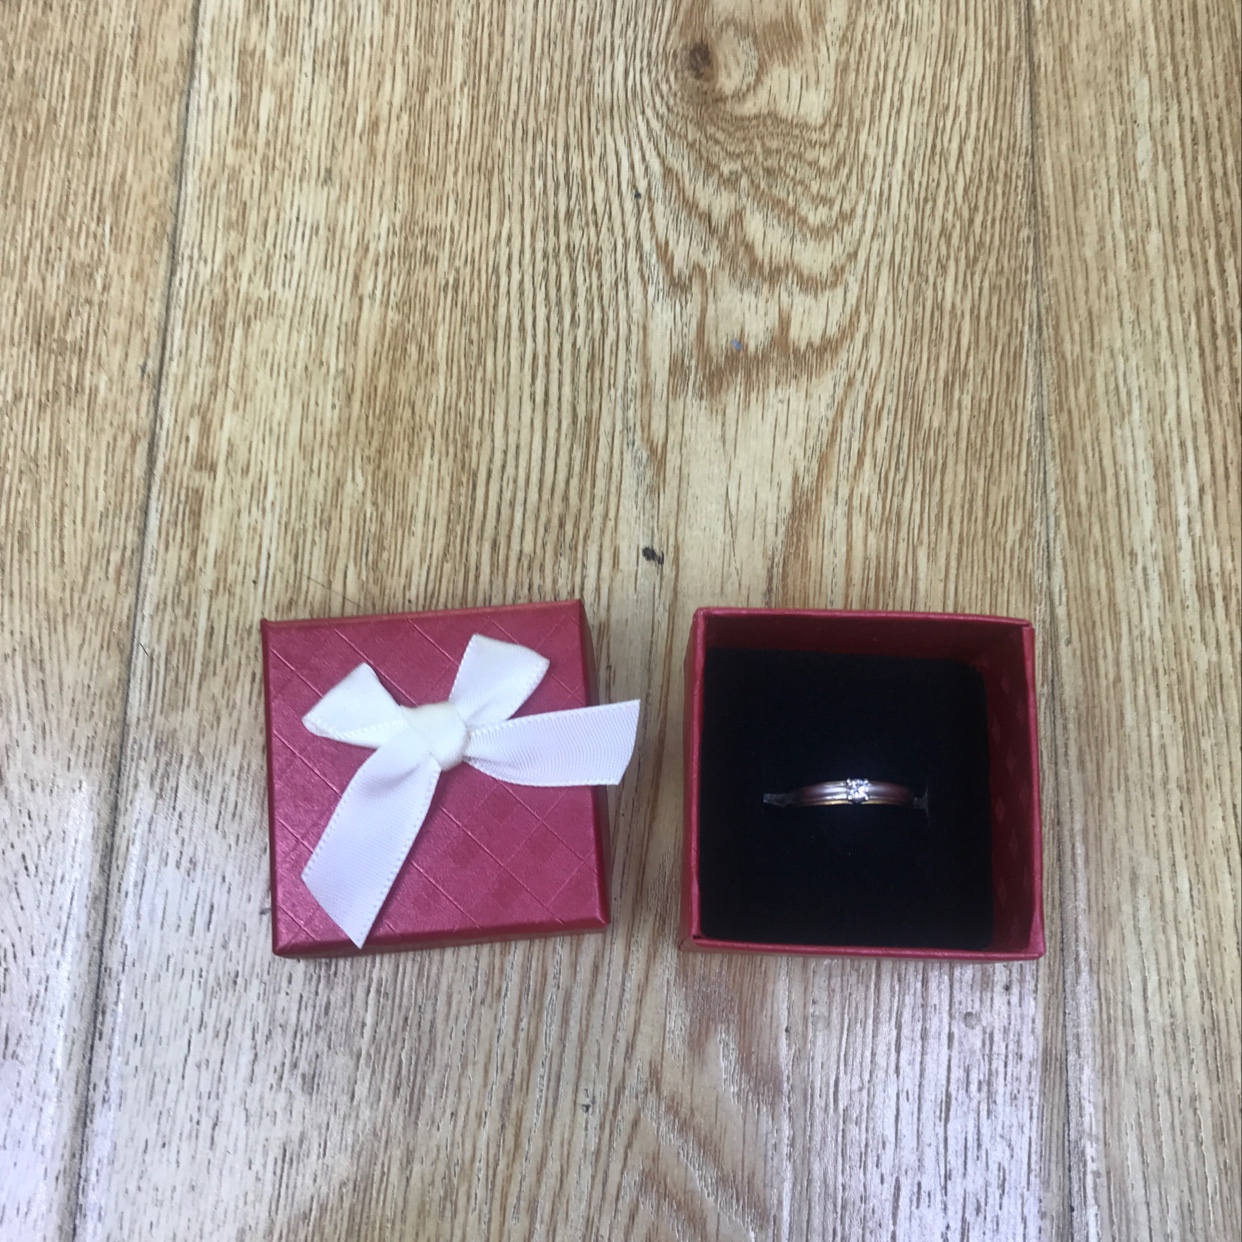 韩版戒指盒/珠宝首饰盒/礼品盒产品图